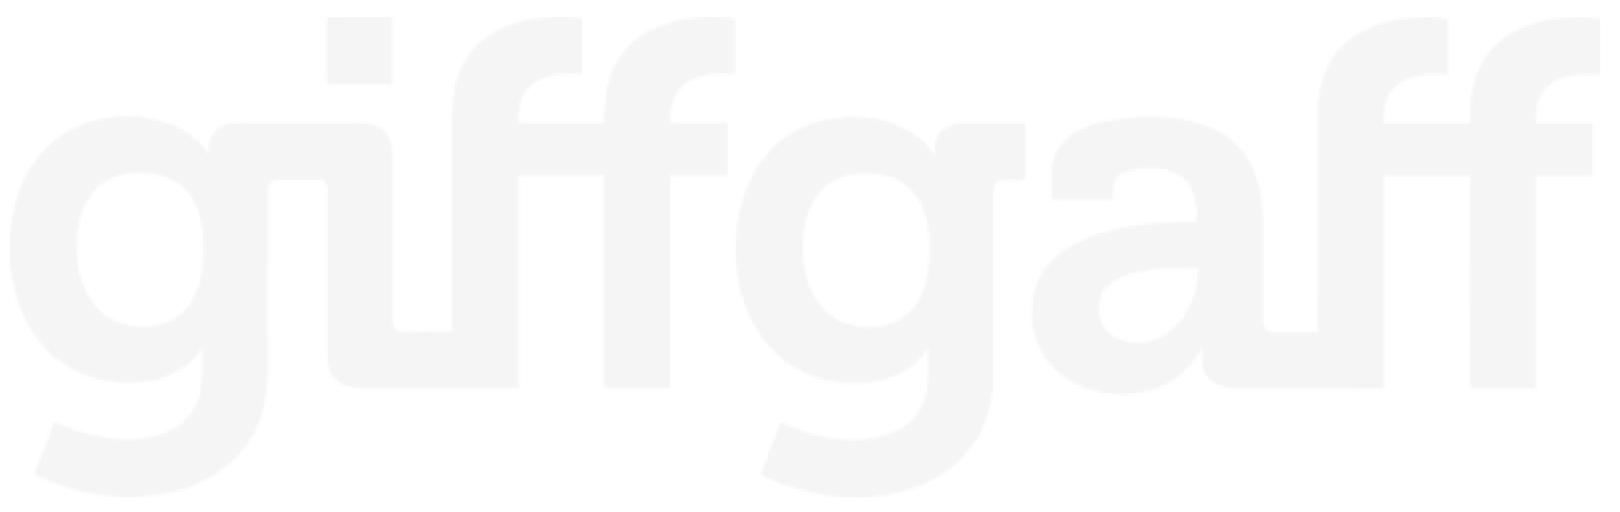 giffgaff-logo 1